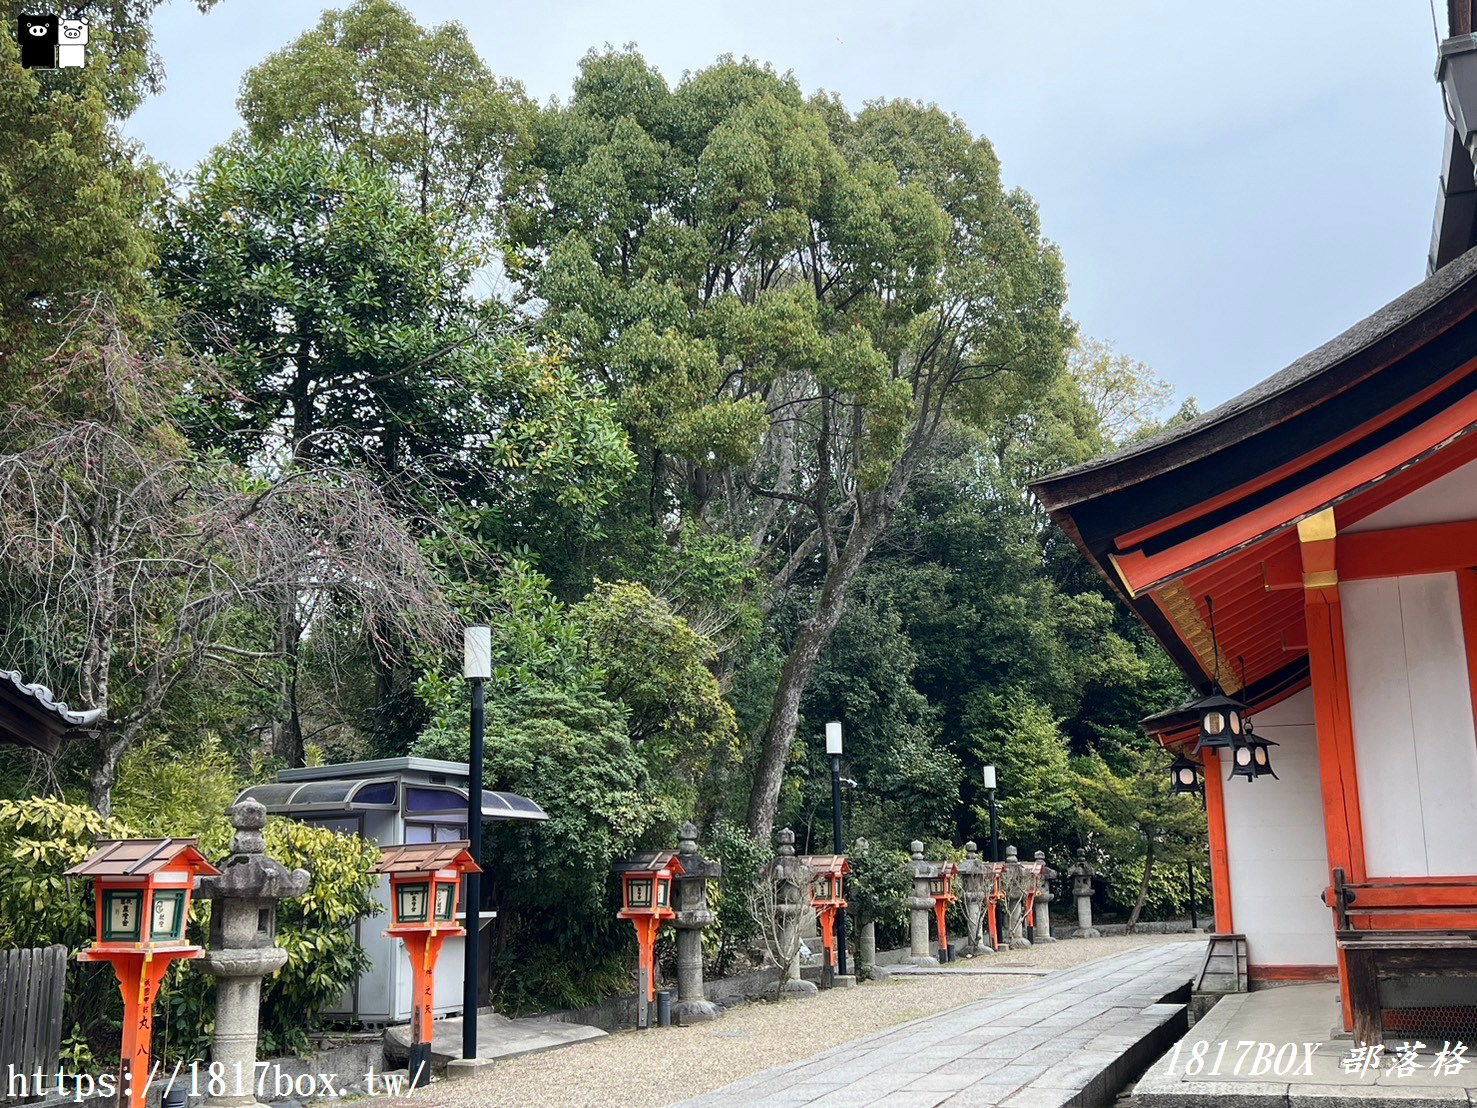 【京都景點】日本三大祭「祇園祭」發祥地。京都八坂神社